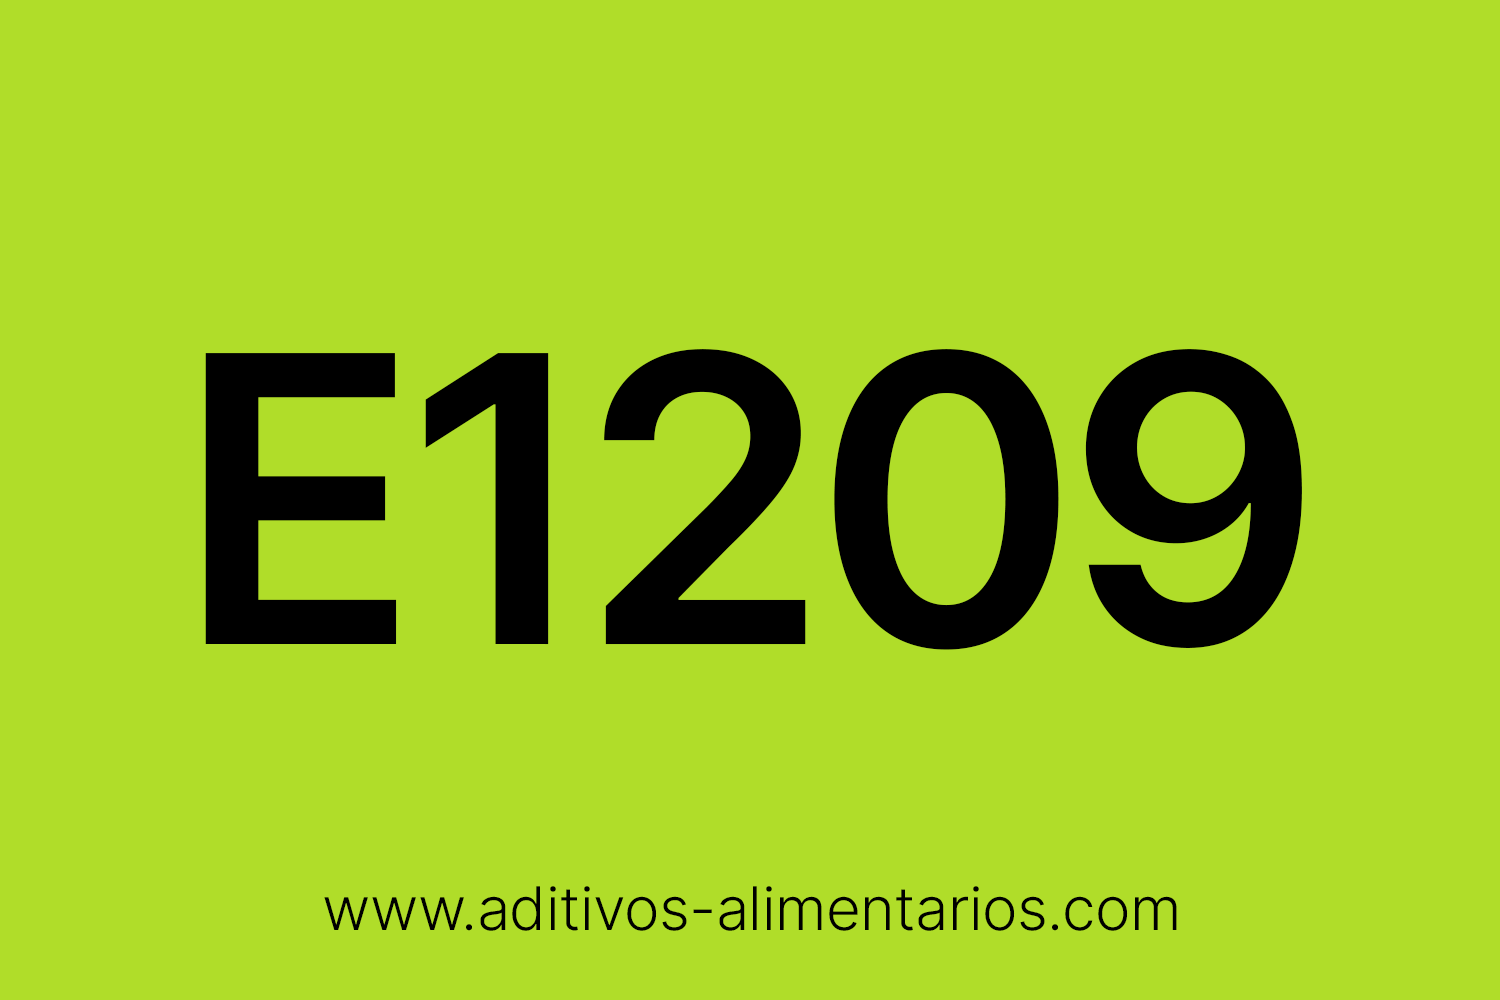 Aditivo Alimentario - E1209 - Copolímero de Injerto de Polivinialcohol y Polietilenglicol